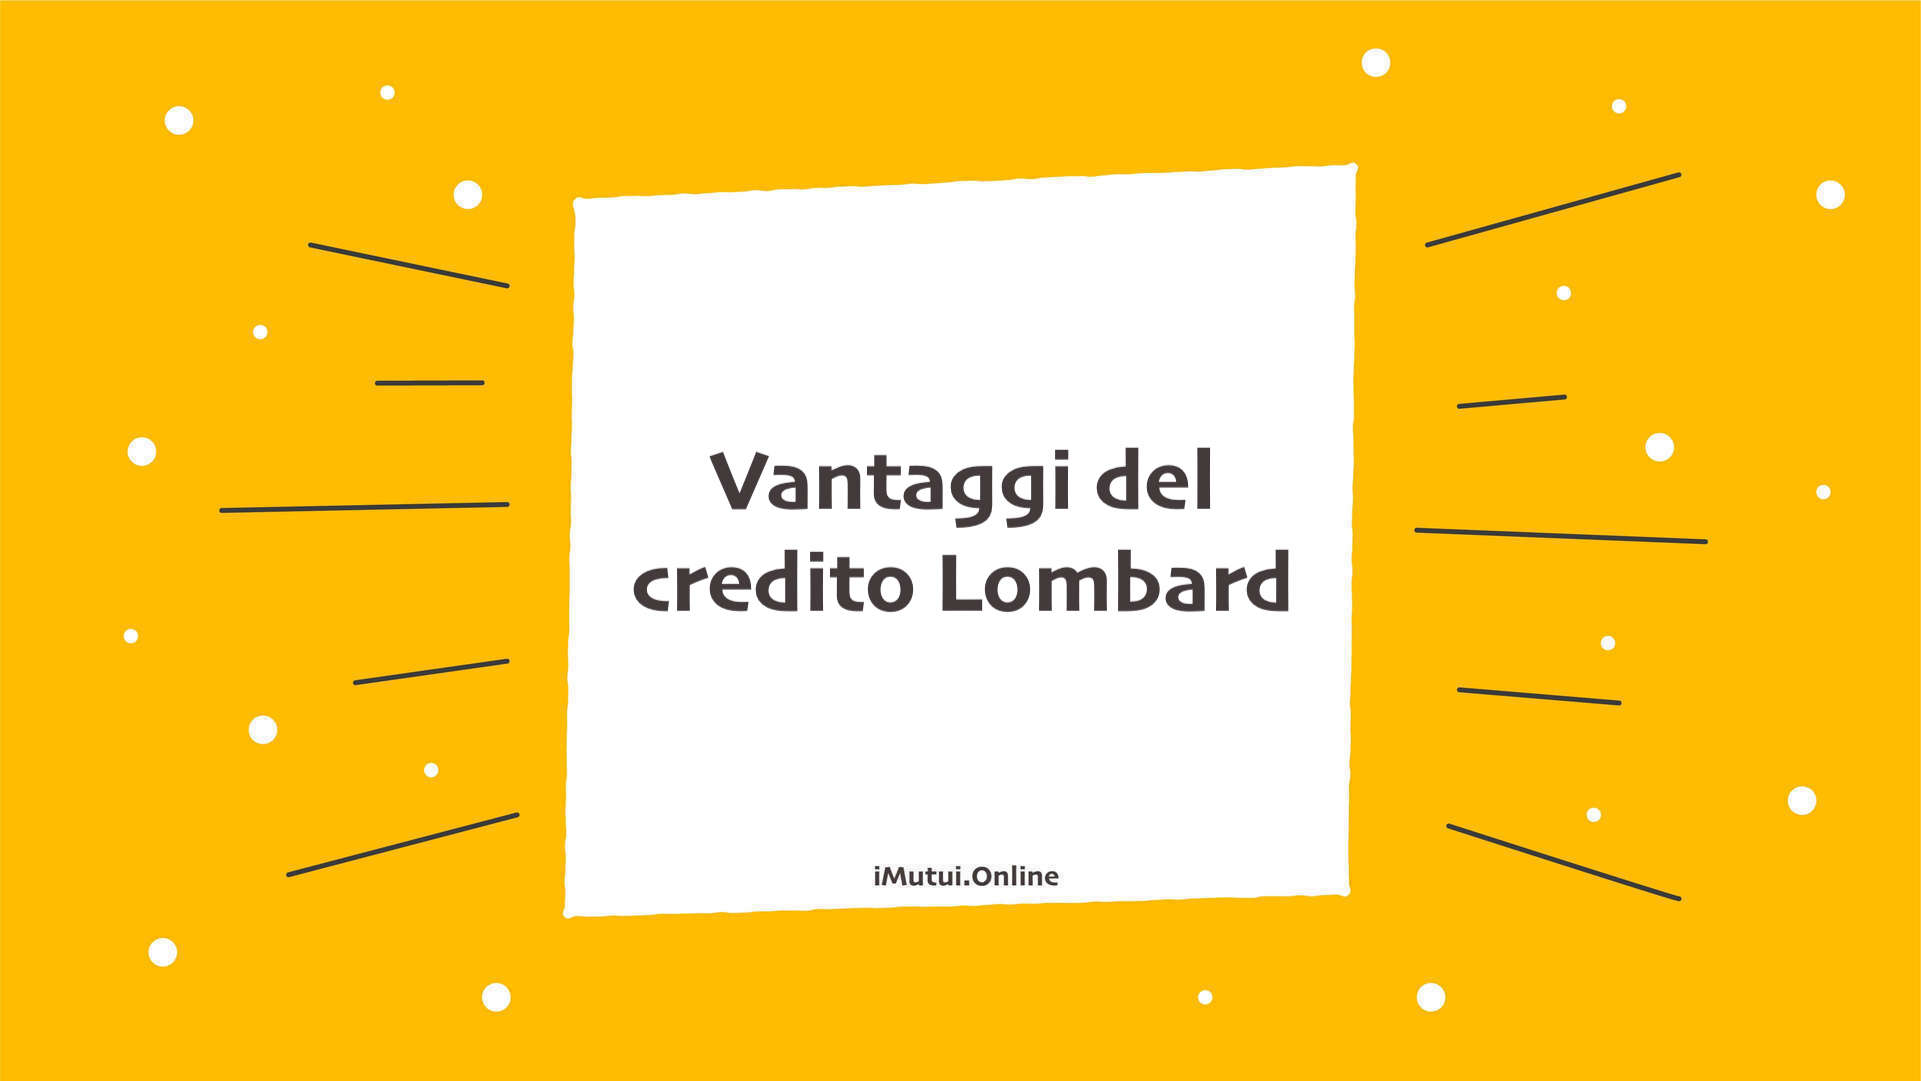 Vantaggi del credito Lombard